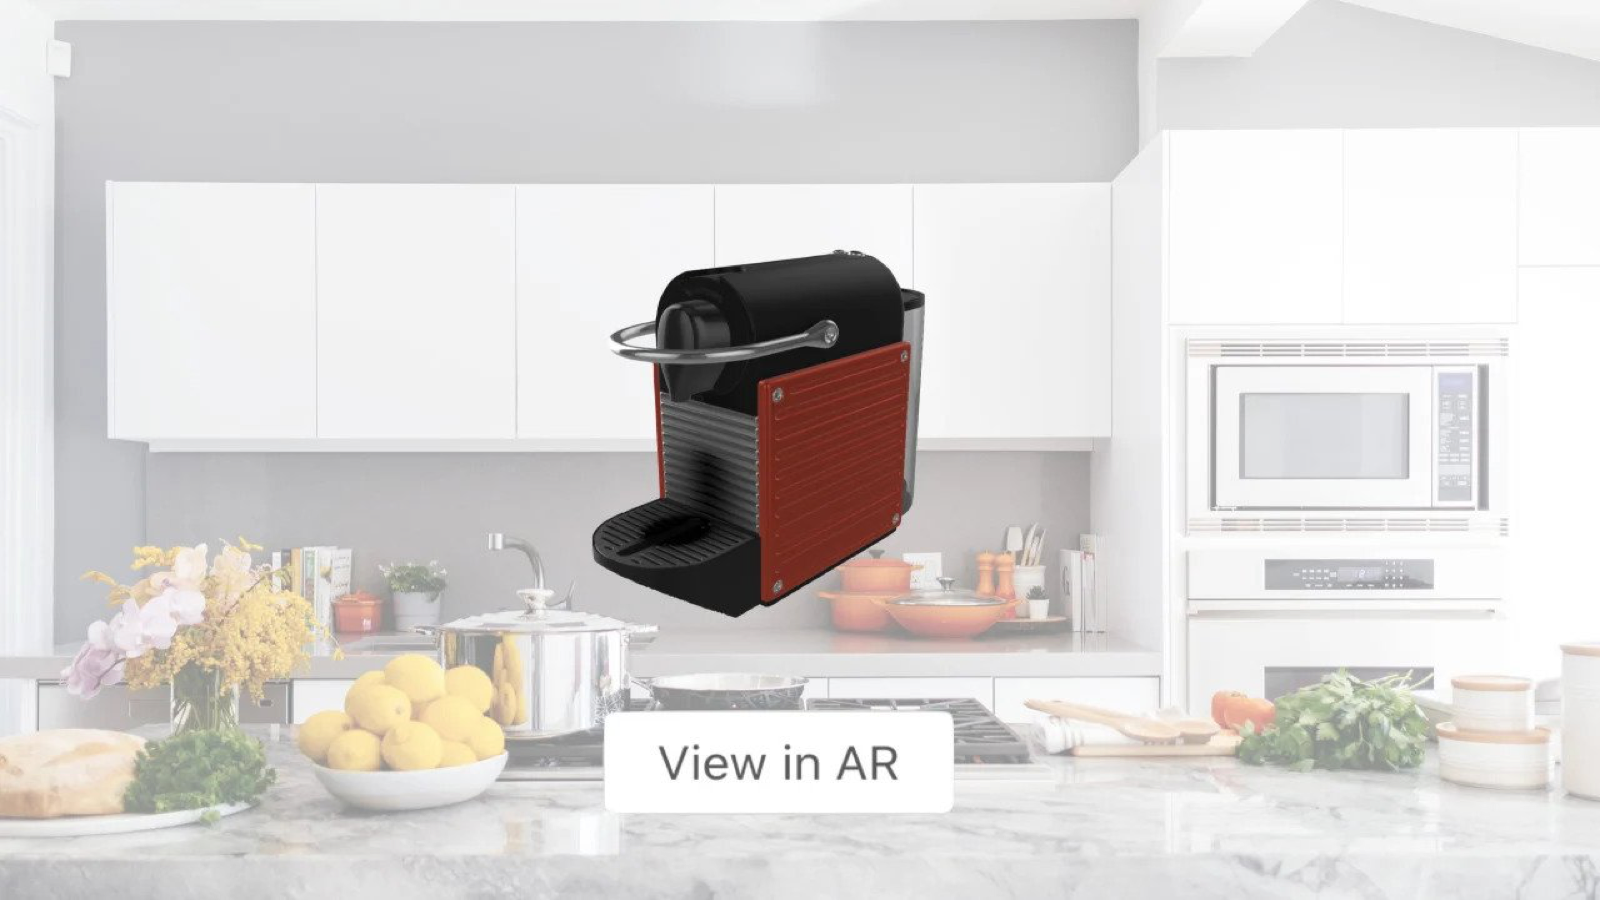 Ermöglichen Sie Käufern, Produkte mit AR in ihrem Zuhause zu platzieren